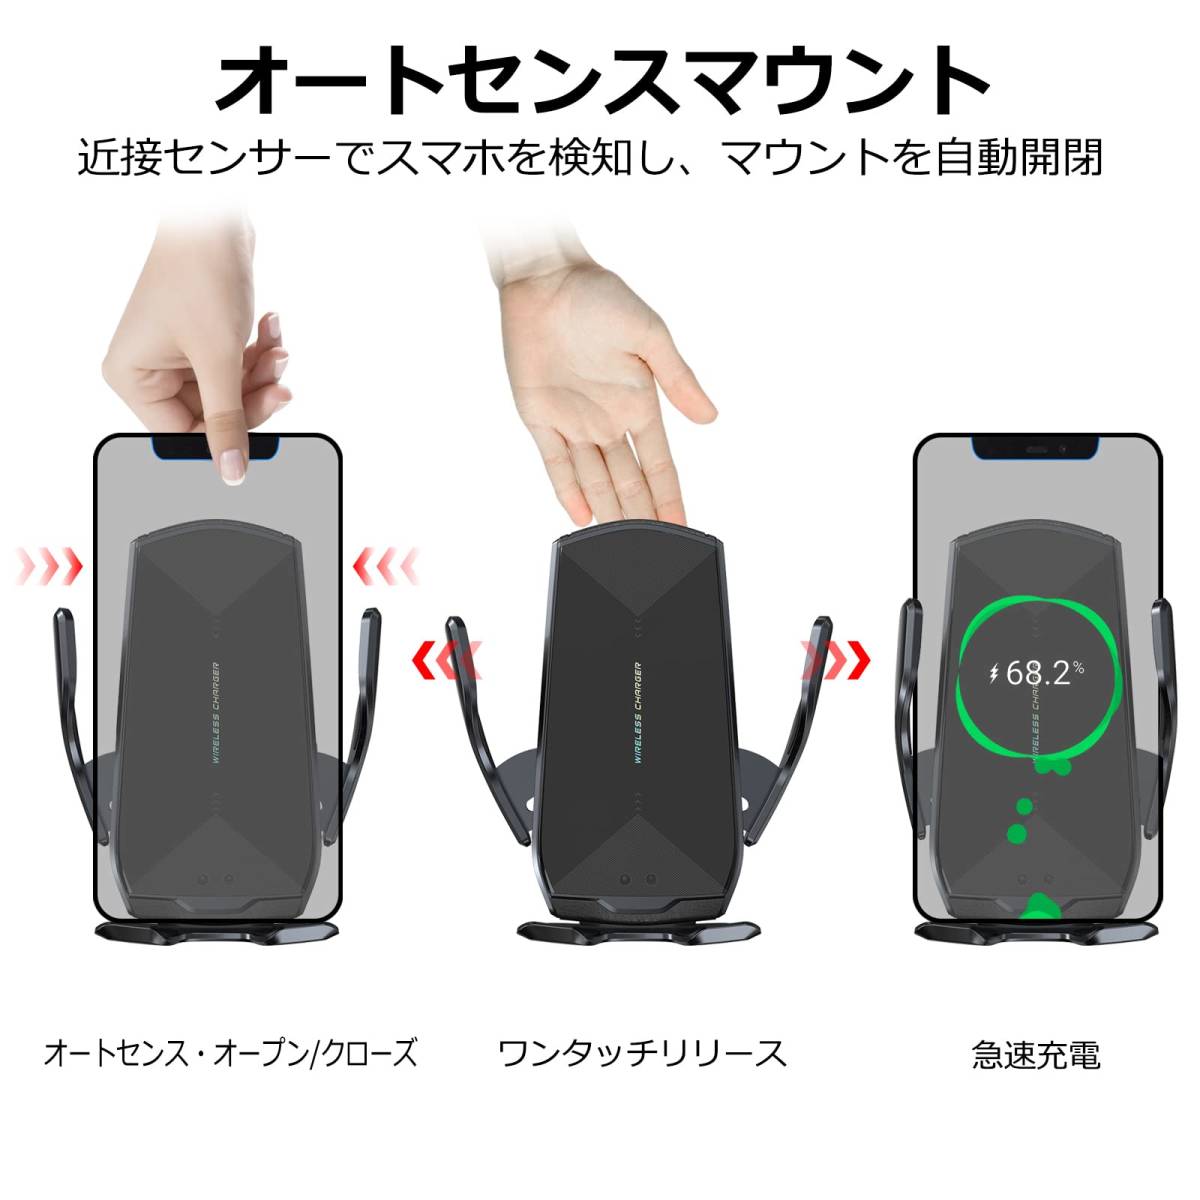 日本製・綿100% LISEN 車用携帯電話ホルダーマウント 厚いケース 大きな携帯電話に対応 調節可能なアーム 吸盤 電話マウント  車のダッシュボード用 フロントガラス エアベント